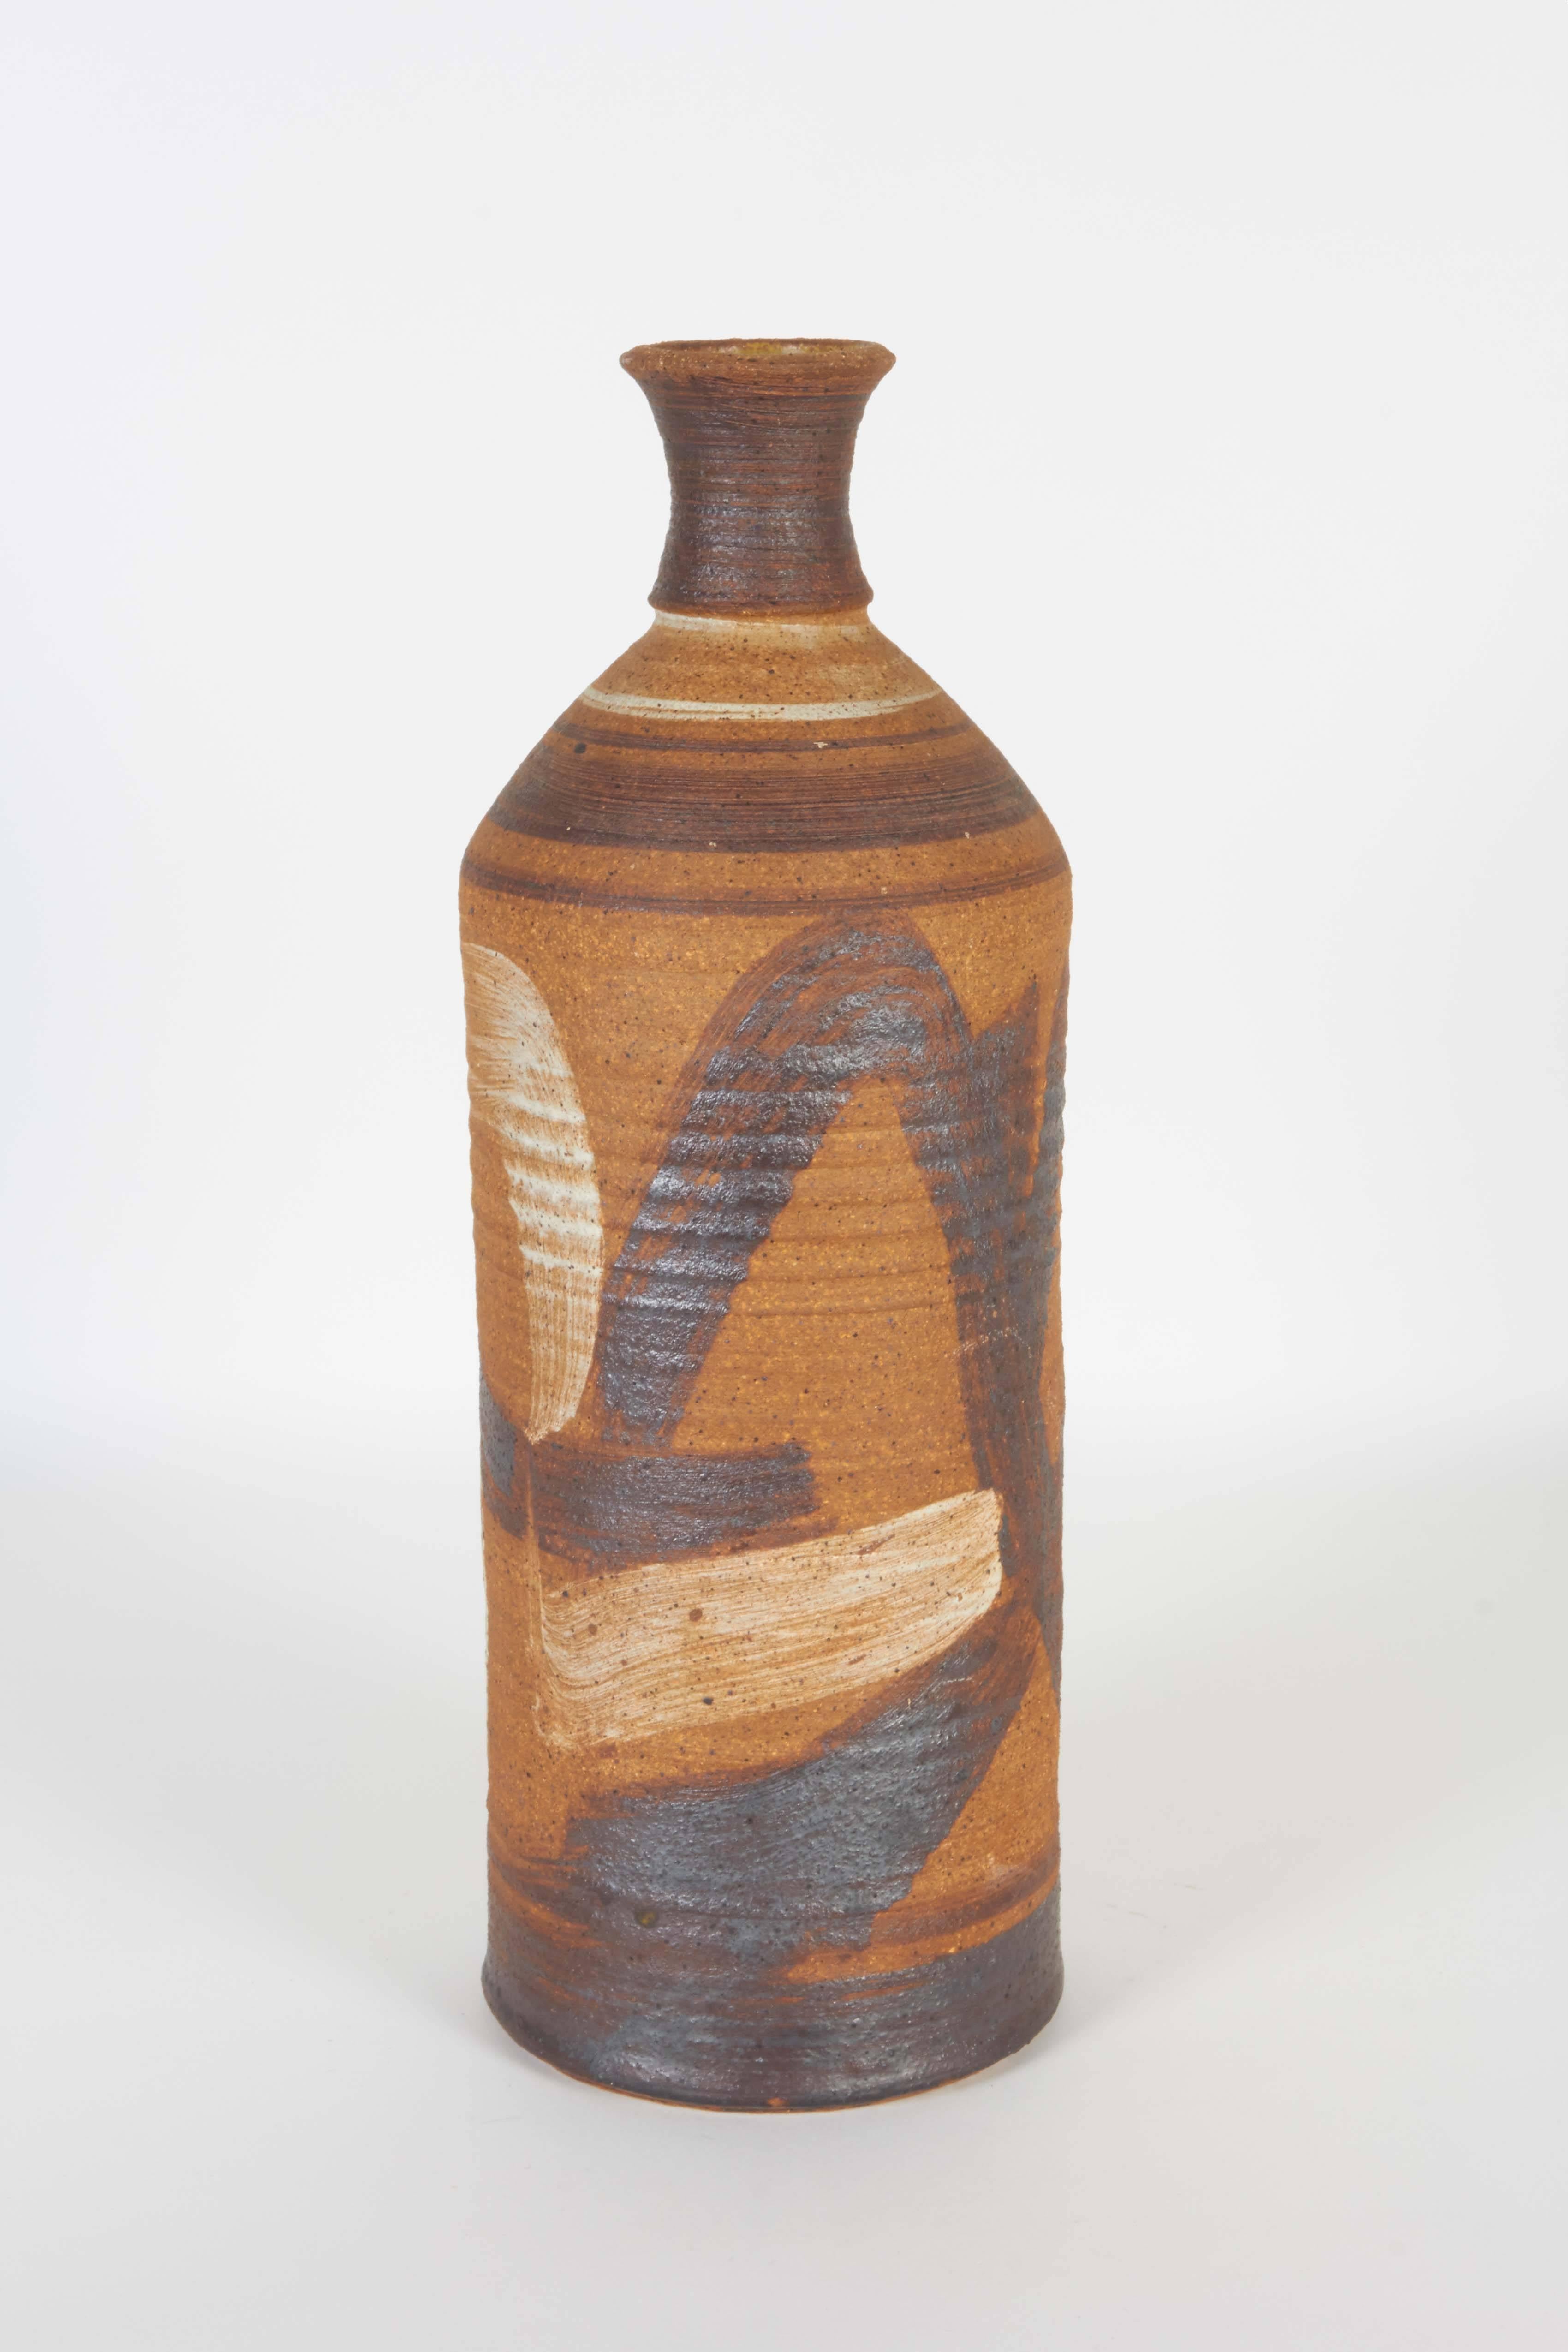 American Studio Pottery Vase 1